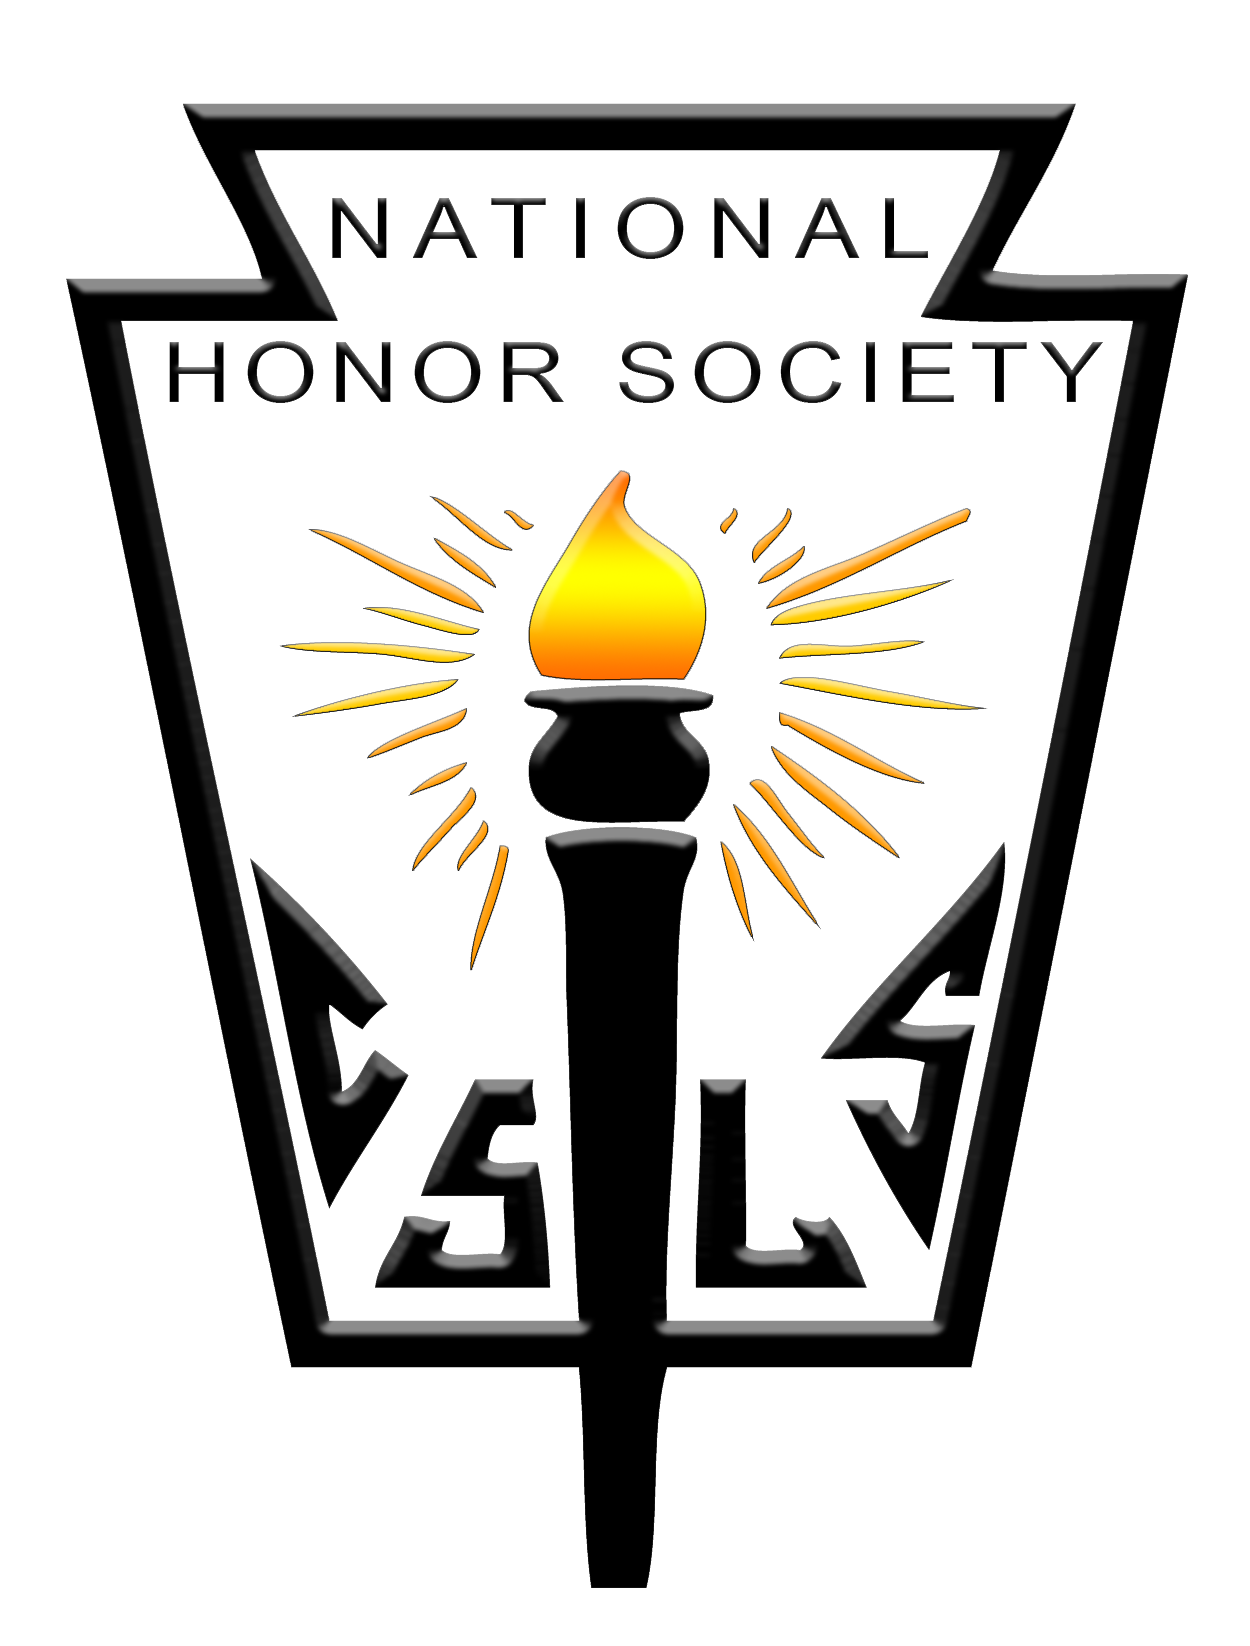 National Honor Society logo